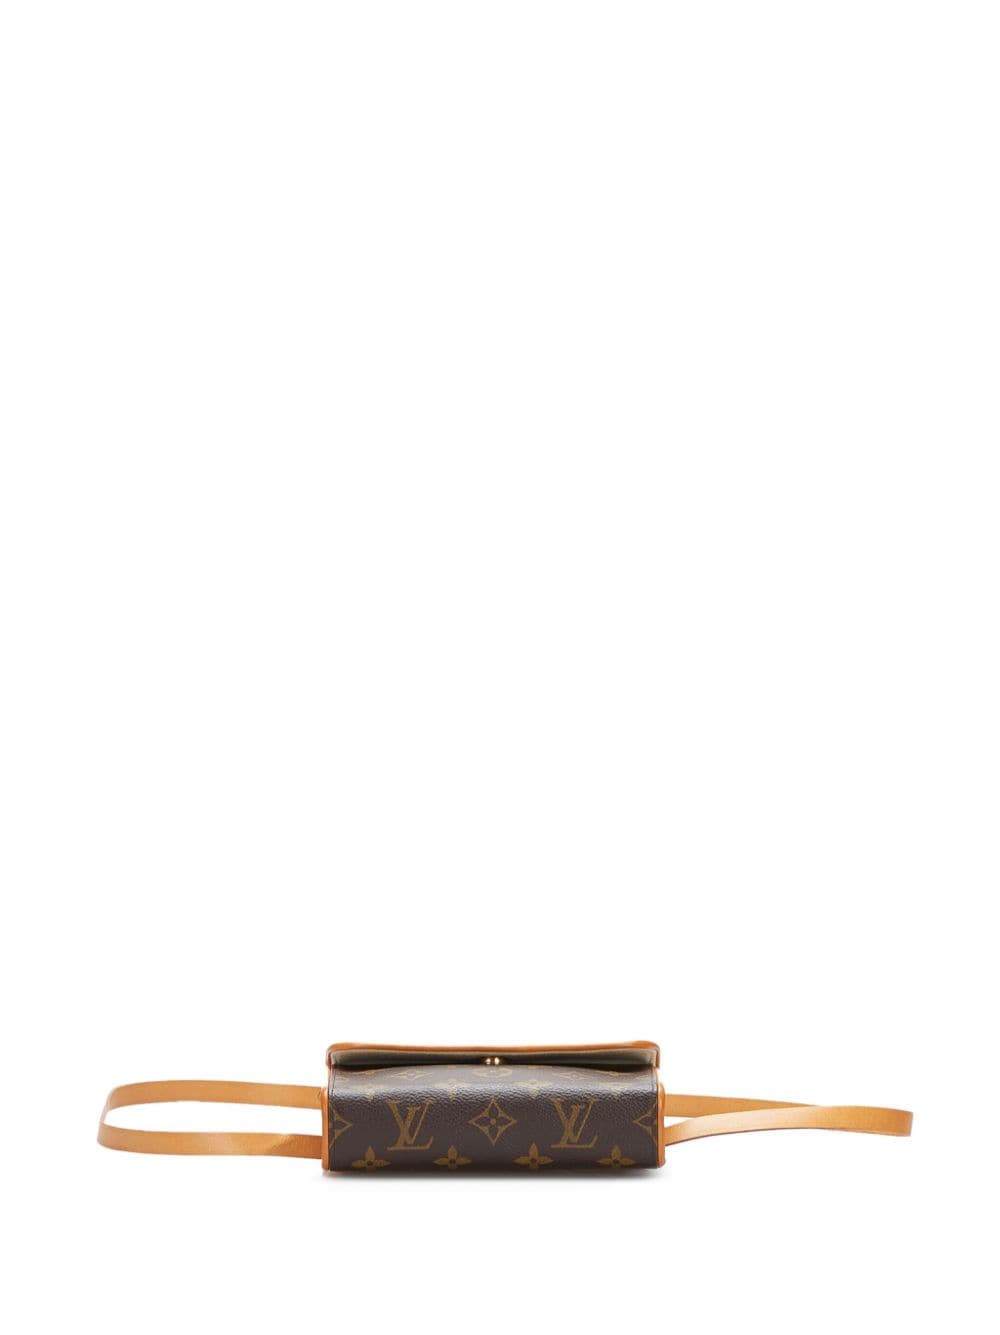 My Best Friend's Closet - ✨New Arrival✨ Louis Vuitton Pochette Florentine  Belt Bag In excellent condition $1095 • • #louisvuittonbelt #louisvuitton # monogram #consignmentbag #louisvuittonfannypack #fannybag  #designerconsignment